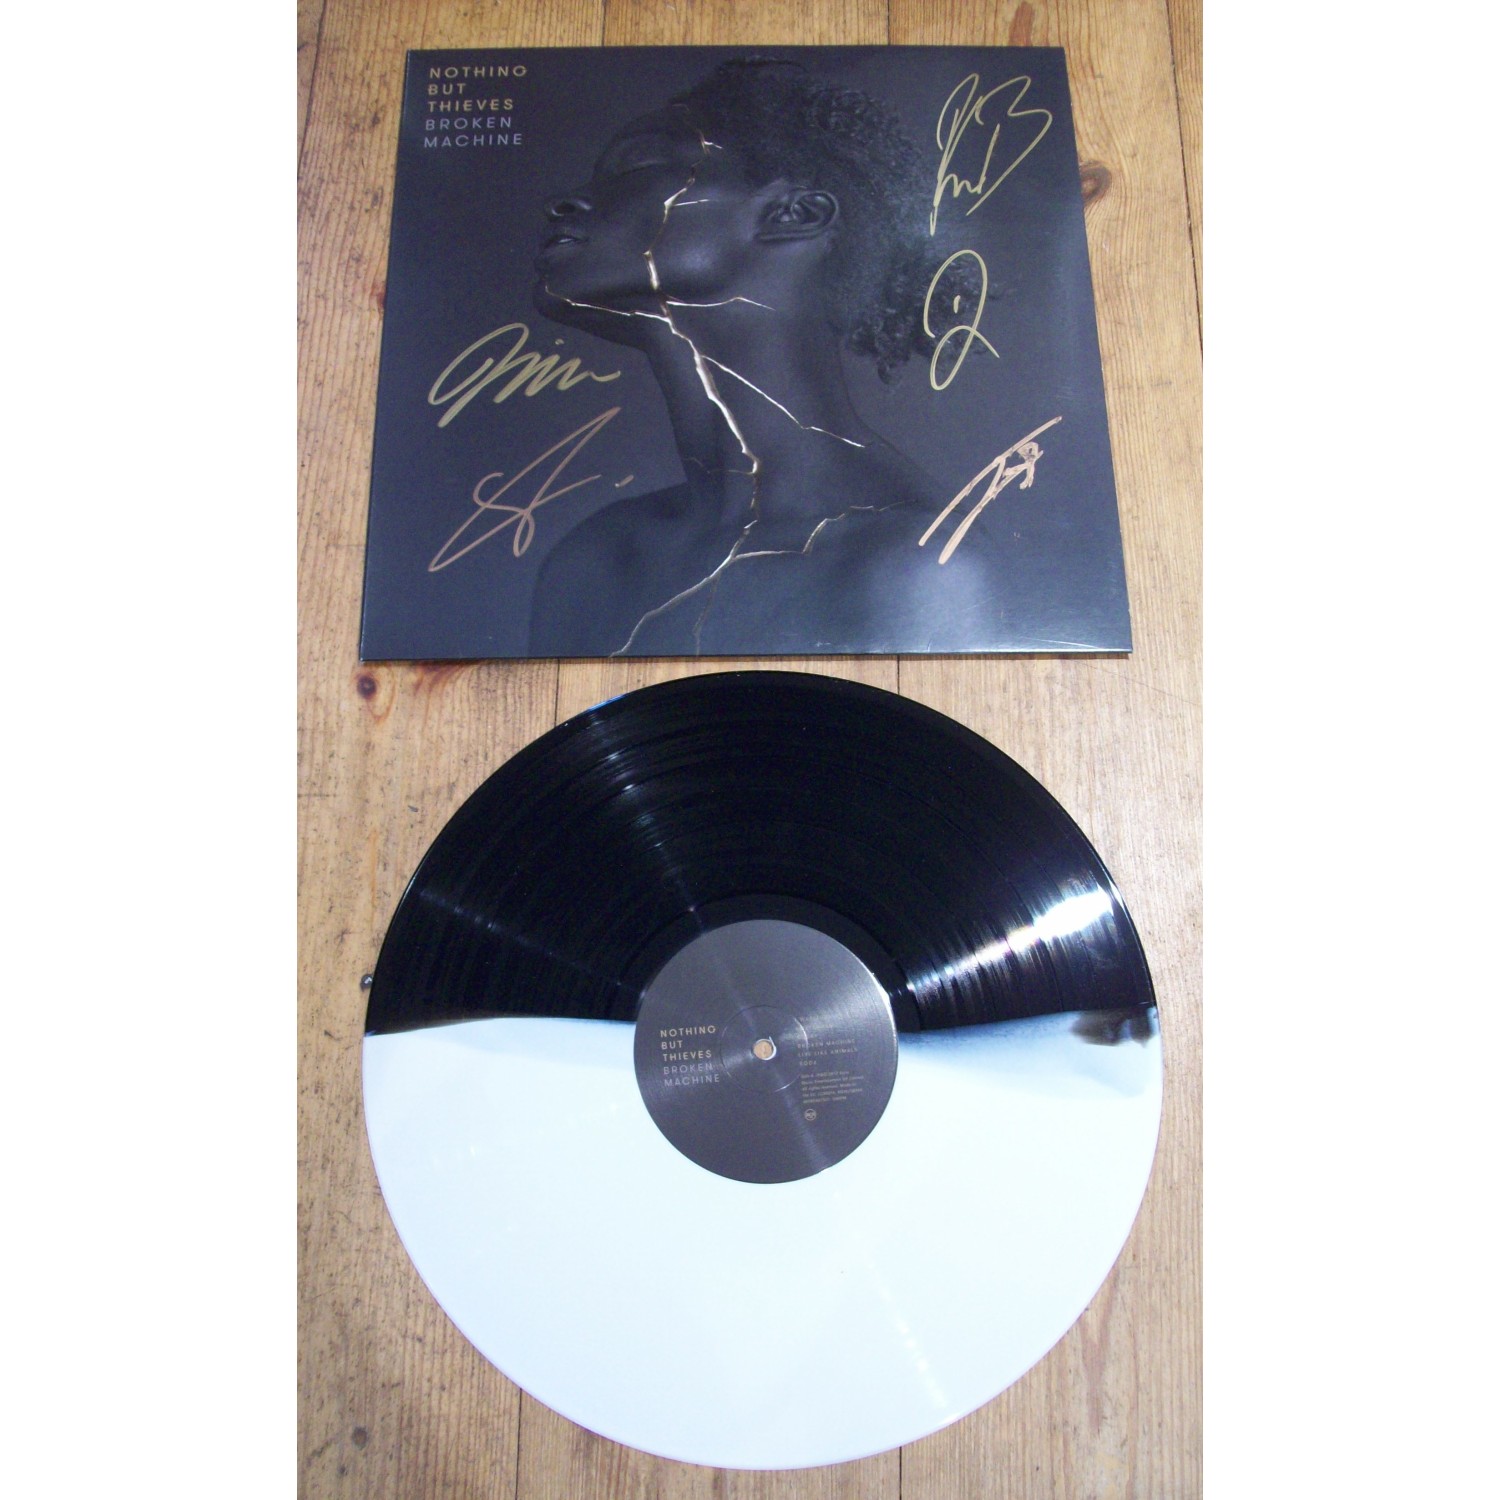 Nothing But Signed Broken Machine Vinyl LP 26202